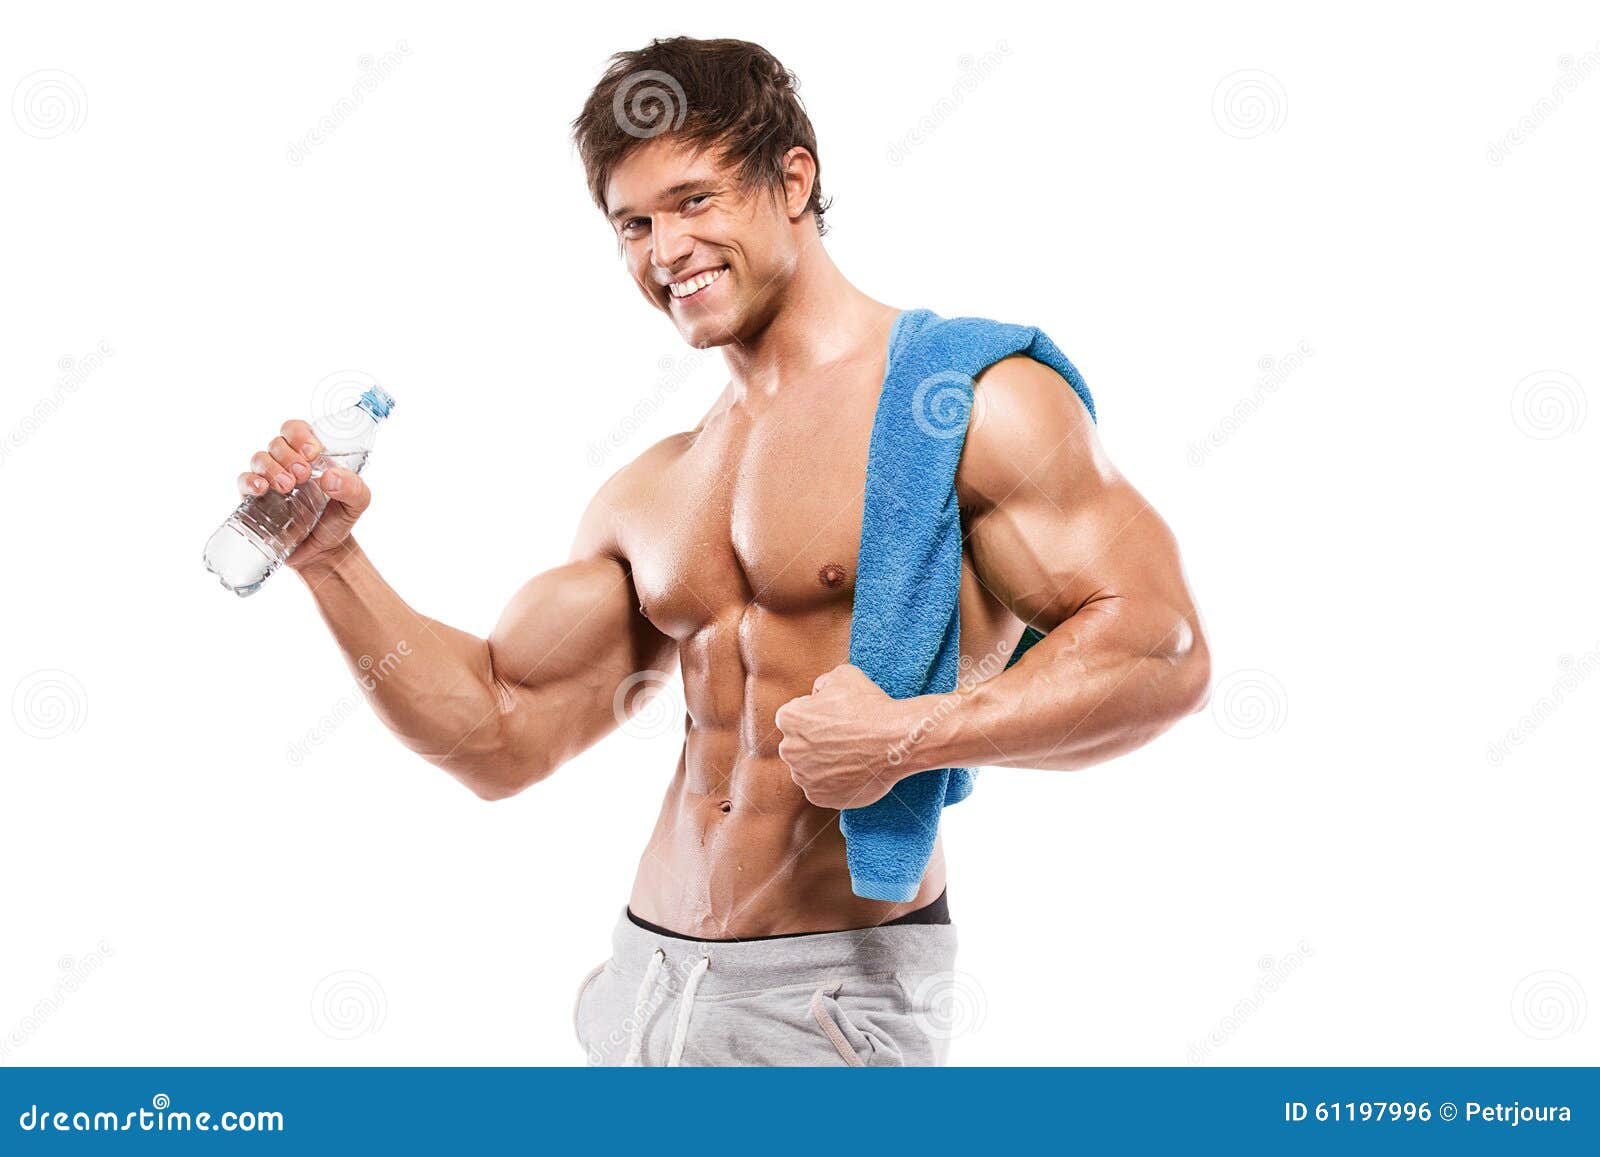 Руки рост мышц. Бицепс мужчины. Мужик показывает мышцы. Мужик показывает бицепс. Человек хвастается мускулами.